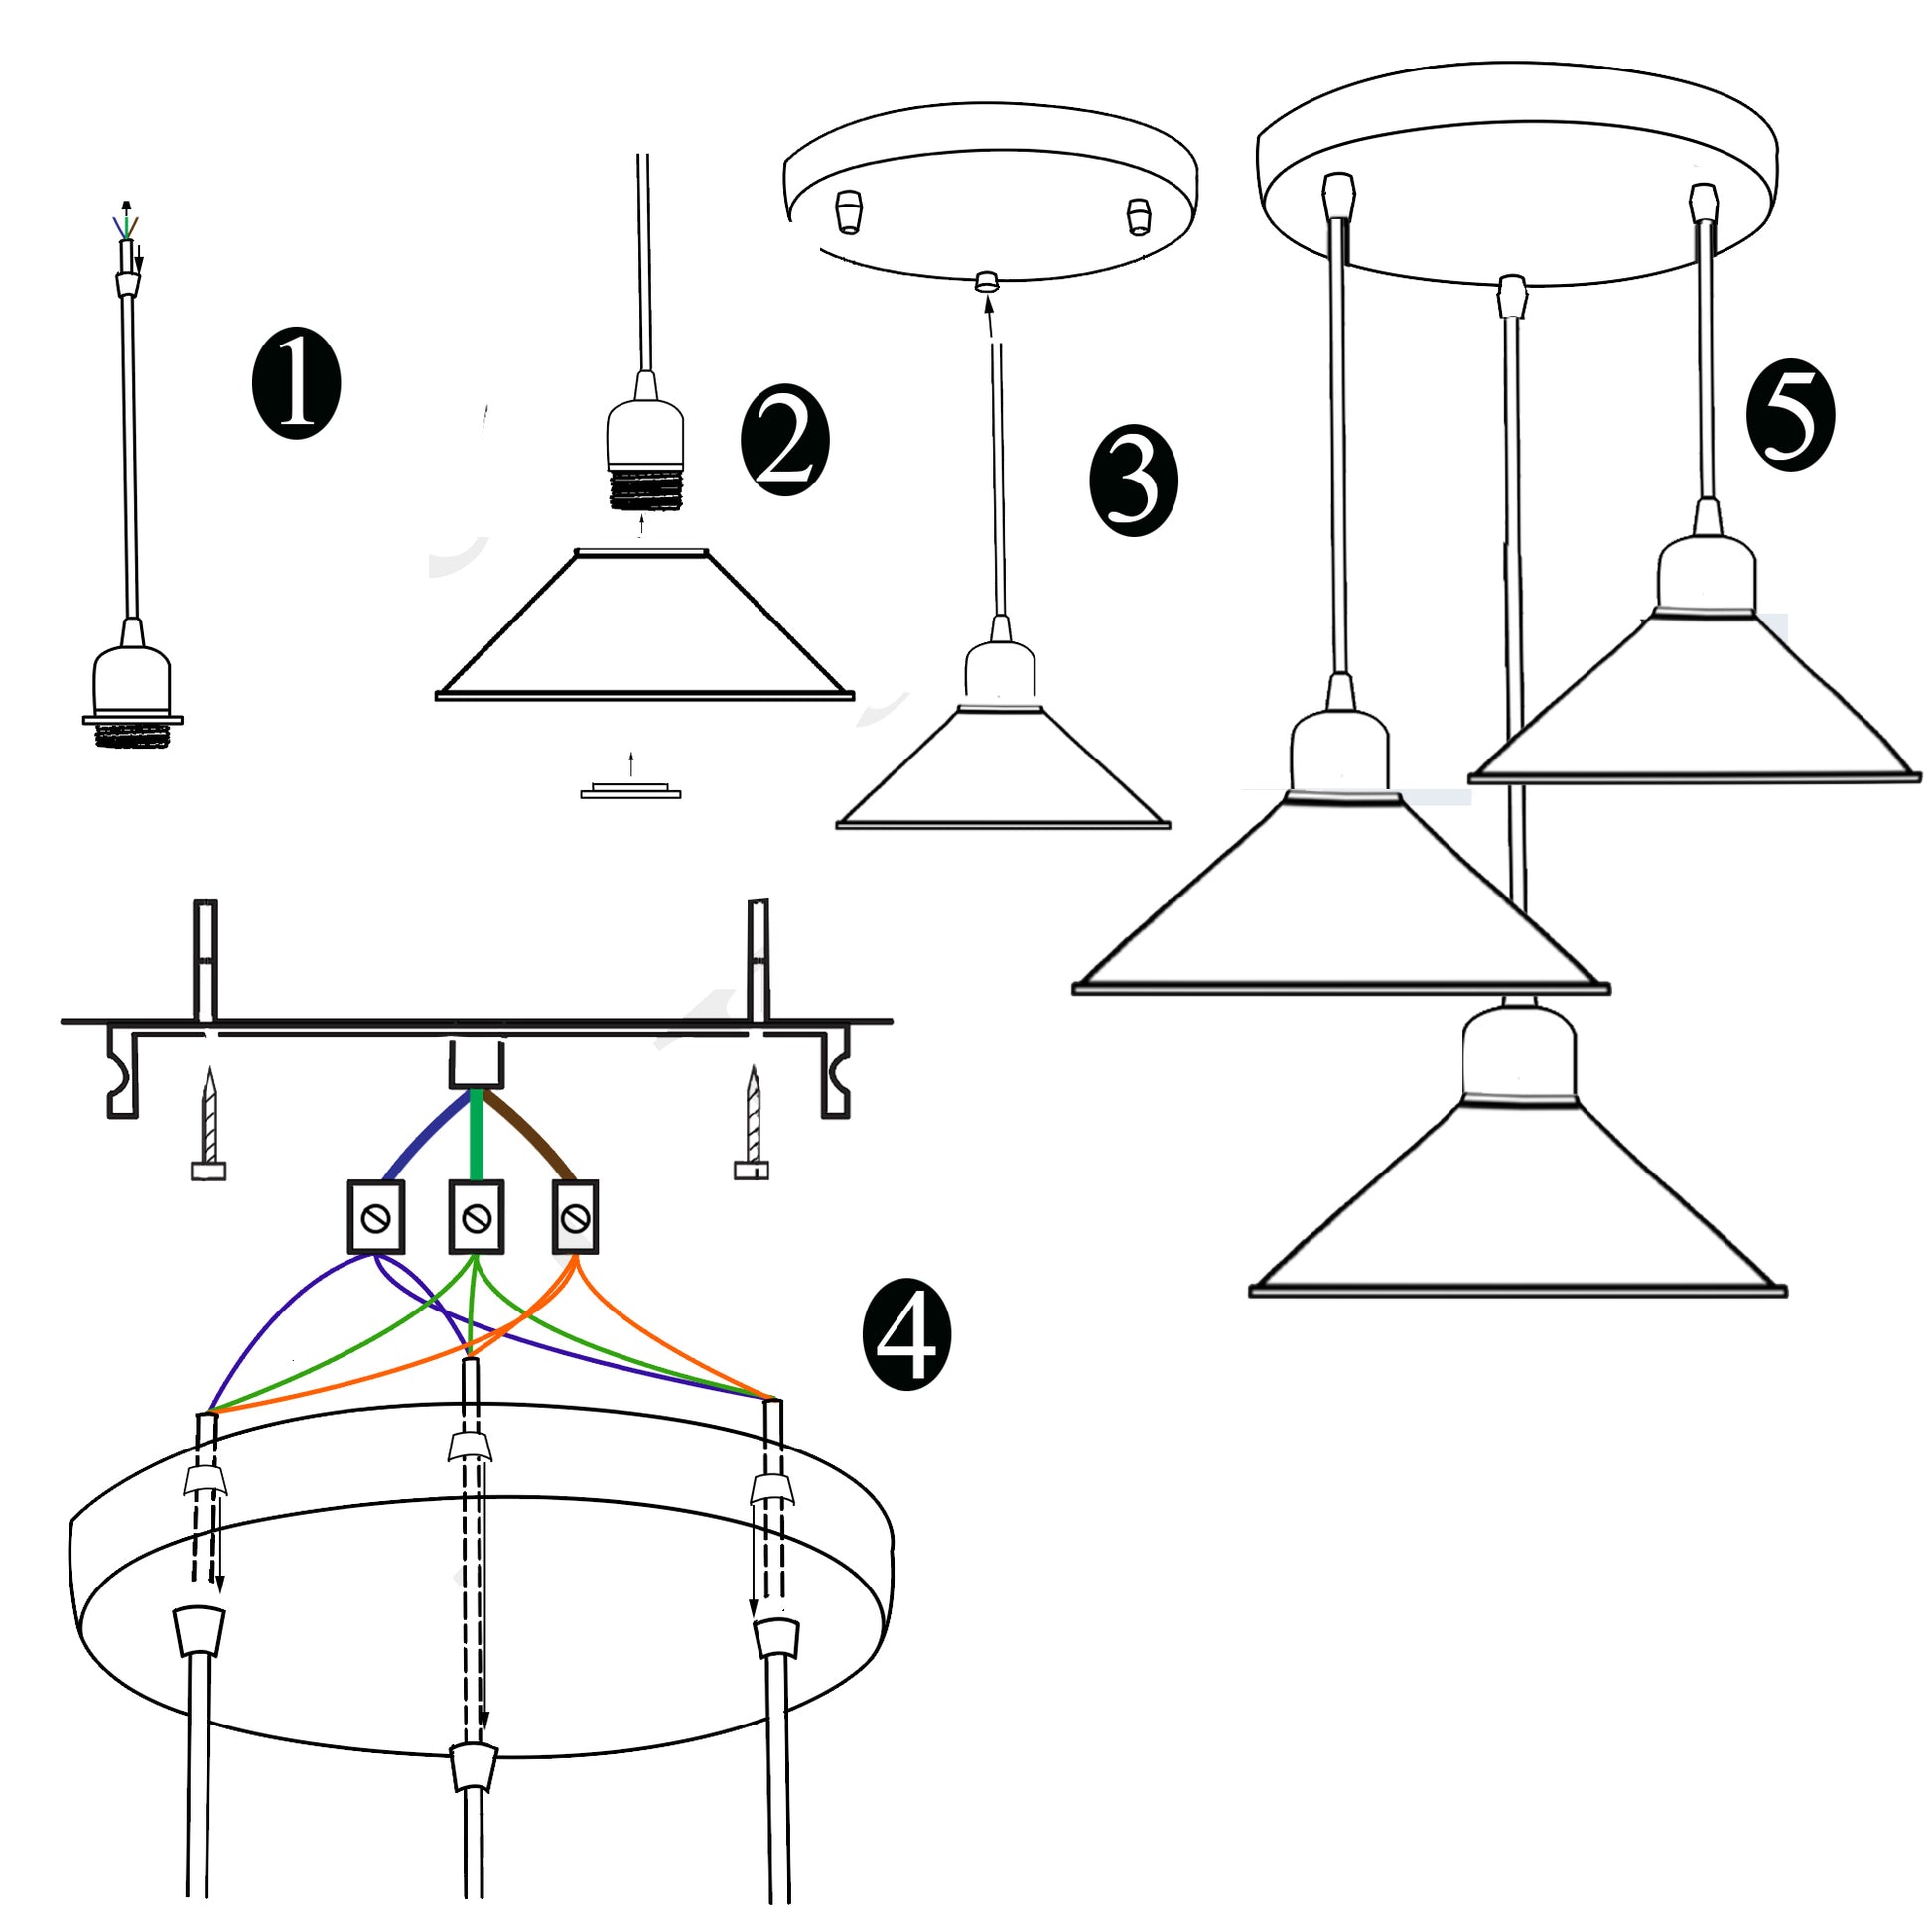 Three Outlet Black Pendant Light 3 Lights Modern Drop Hanging Light~1508 - LEDSone UK Ltd